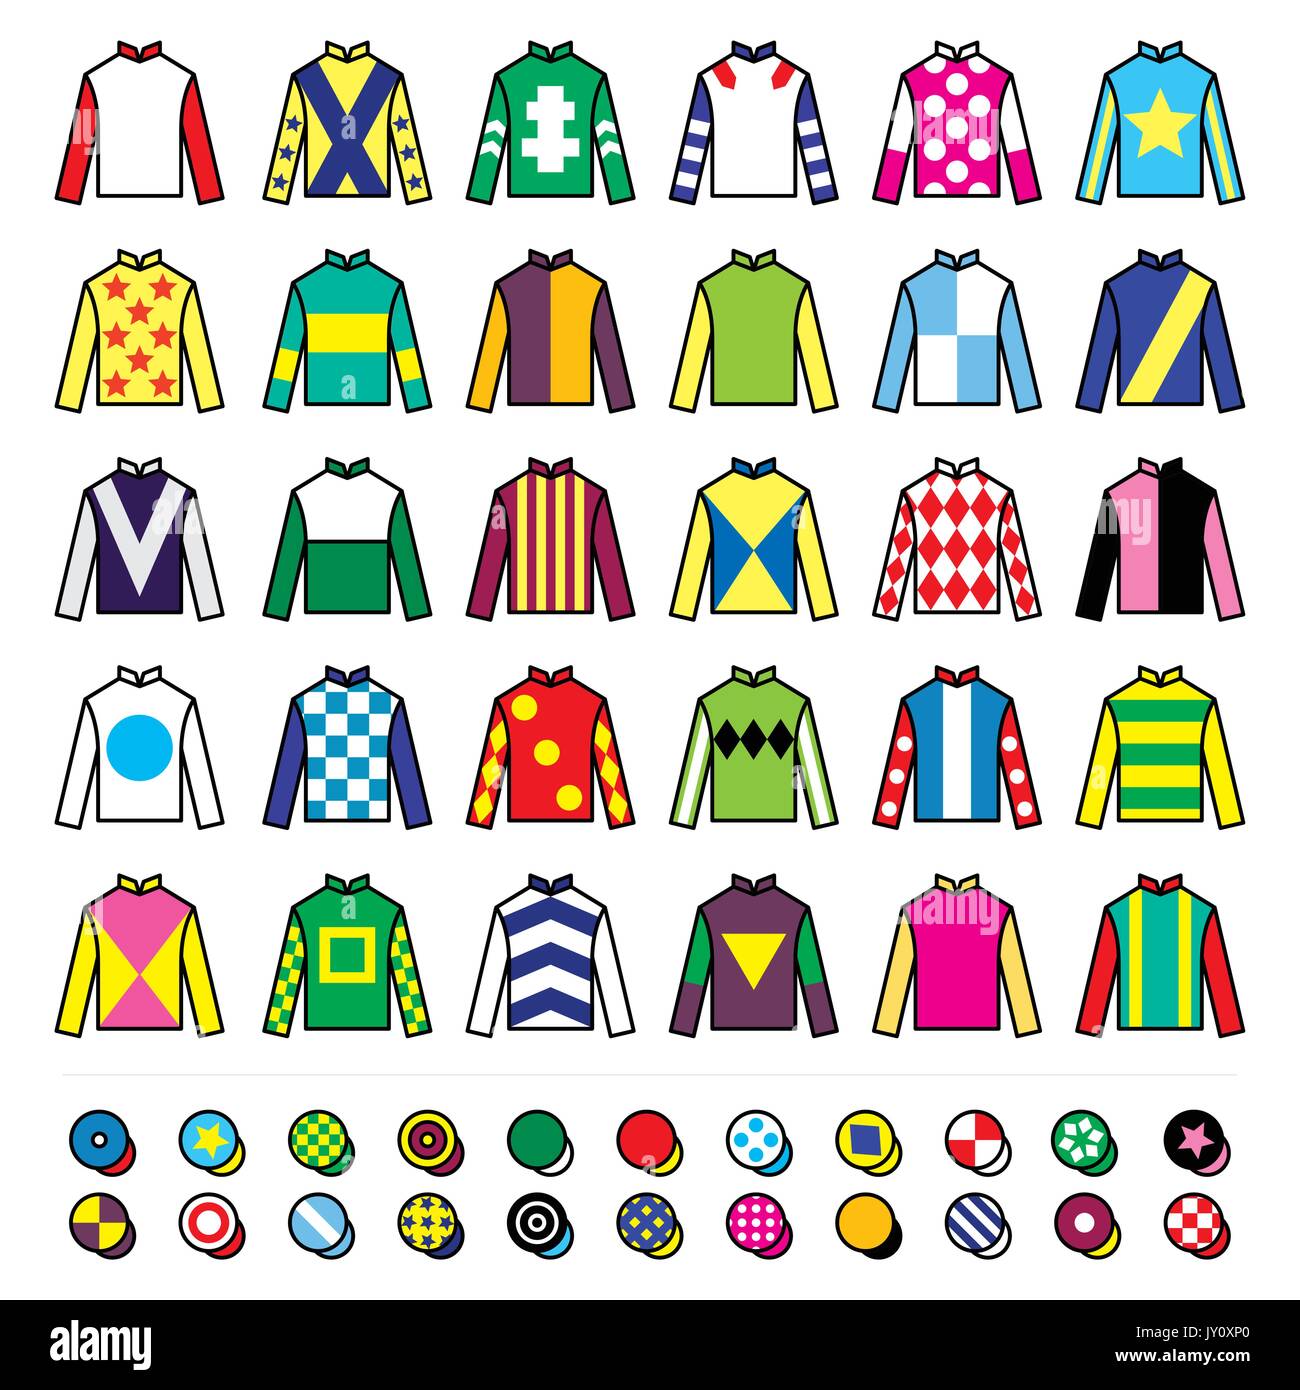 Jockey uniforme - vestes, silks et chapeaux, équitation icônes set Vector icons set - course de cheval Jockey uniforme dessins isolés sur blanc Illustration de Vecteur